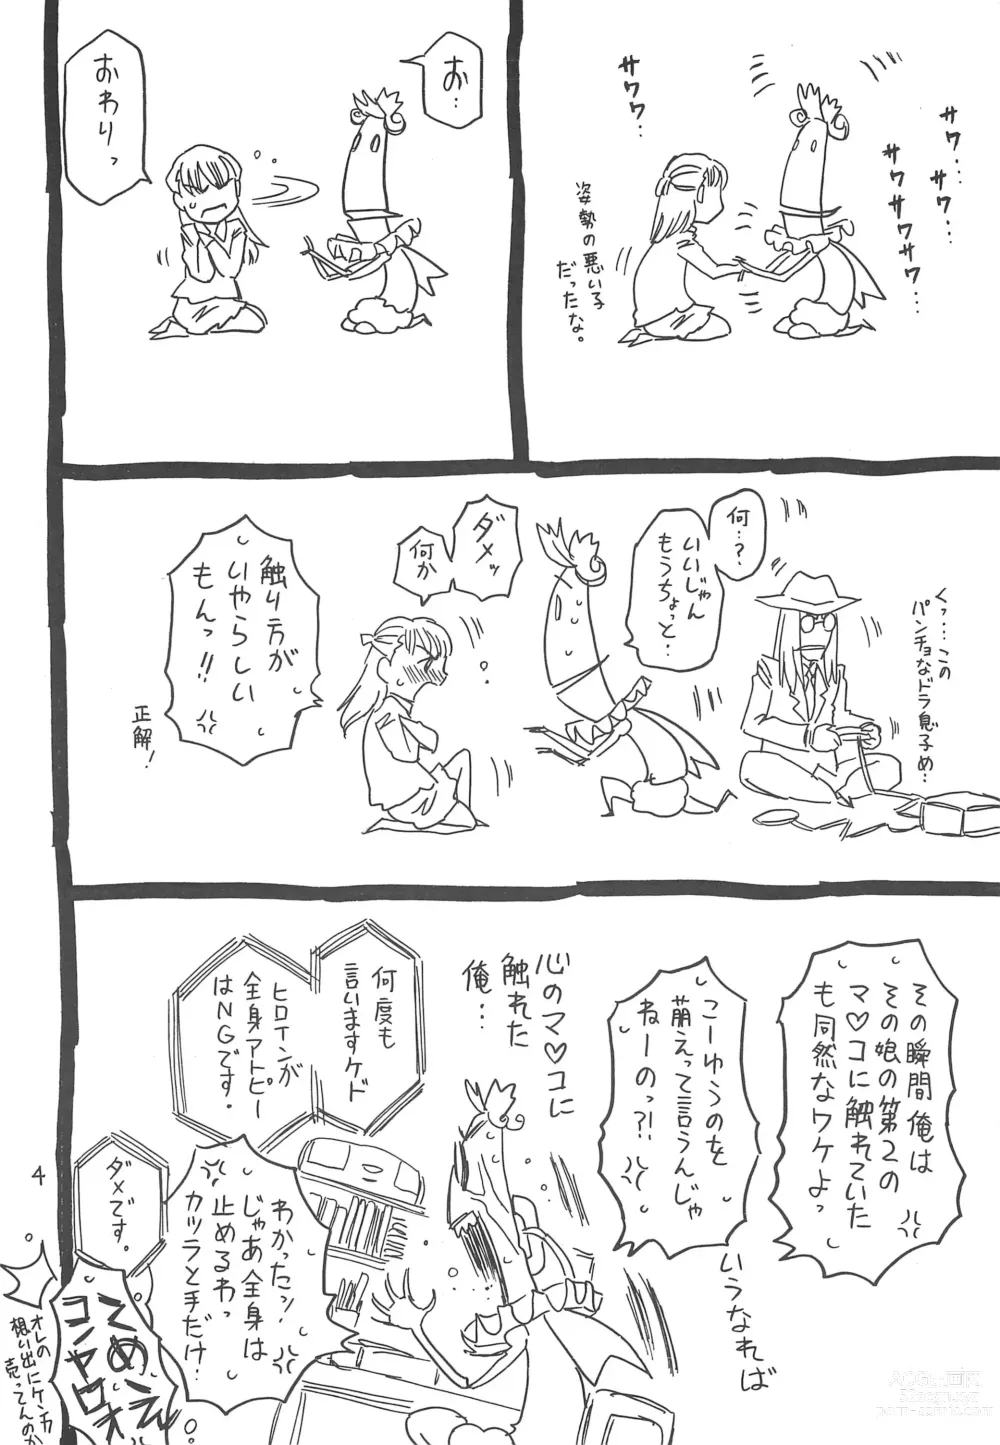 Page 4 of doujinshi Hyakka Shokkou Atopink